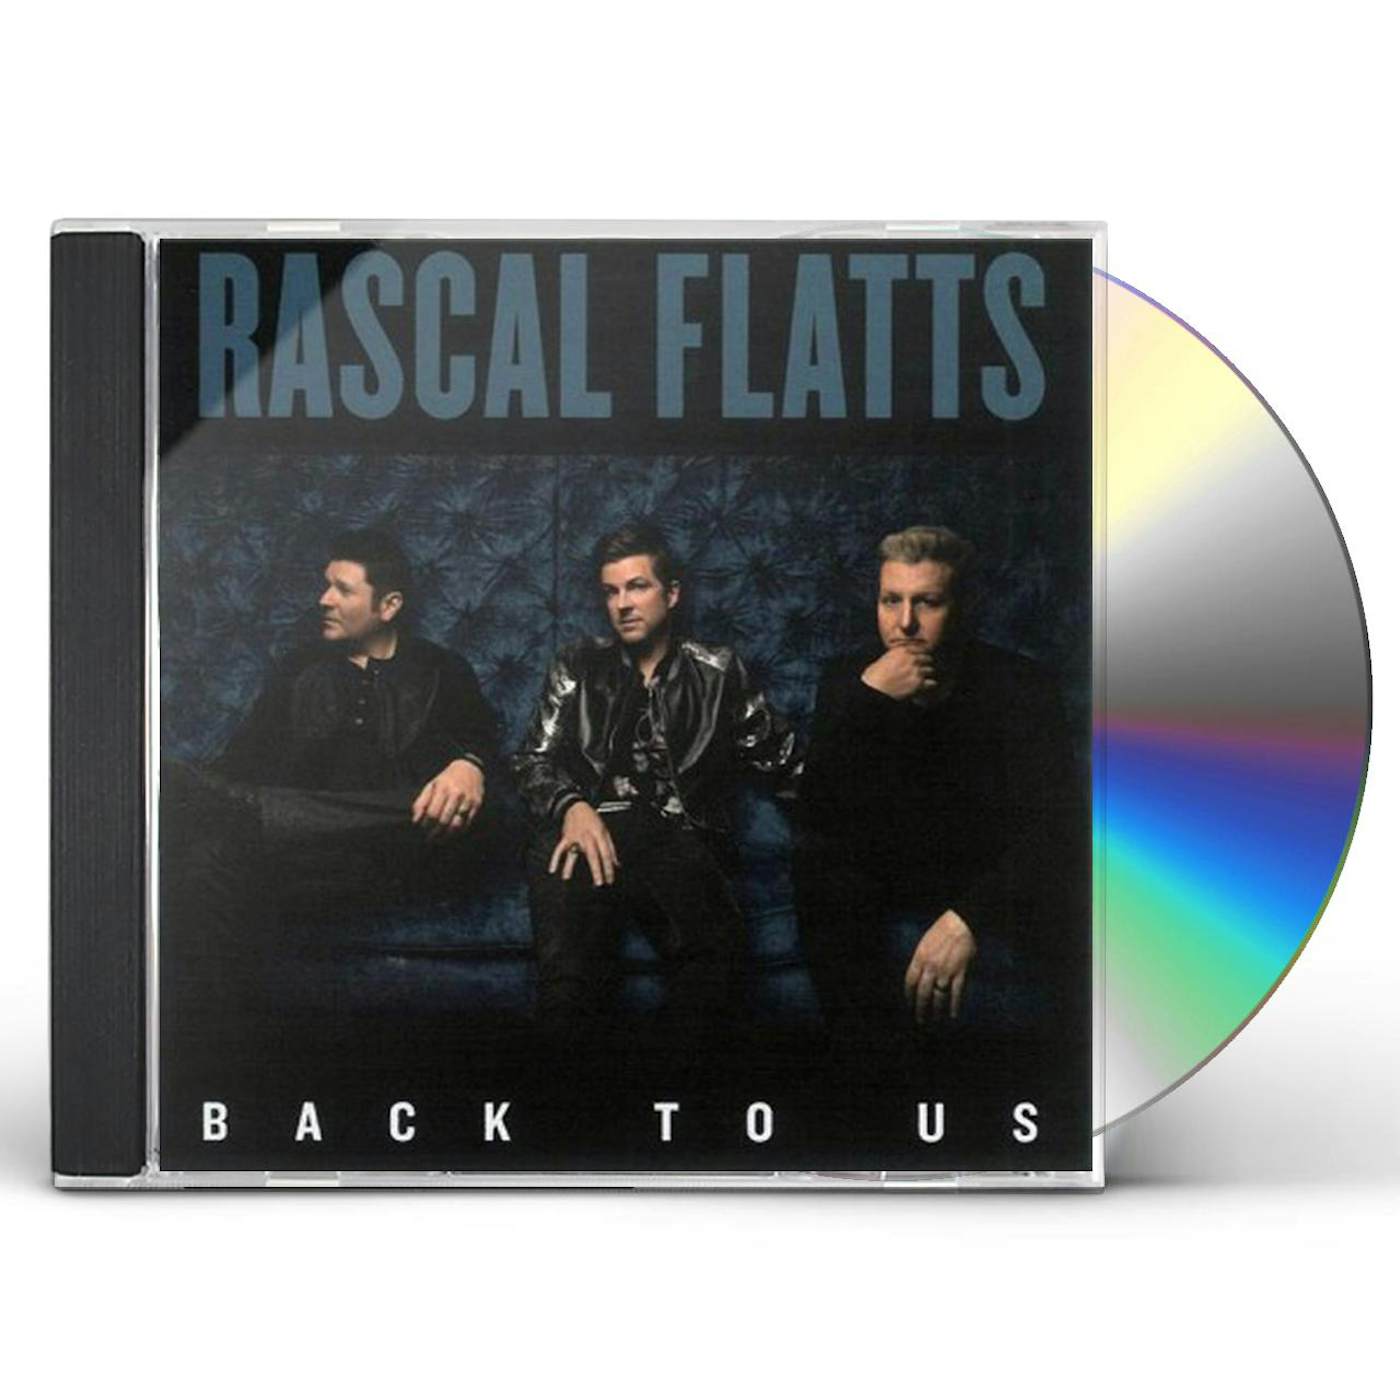 Rascal Flatts BACK TO US CD